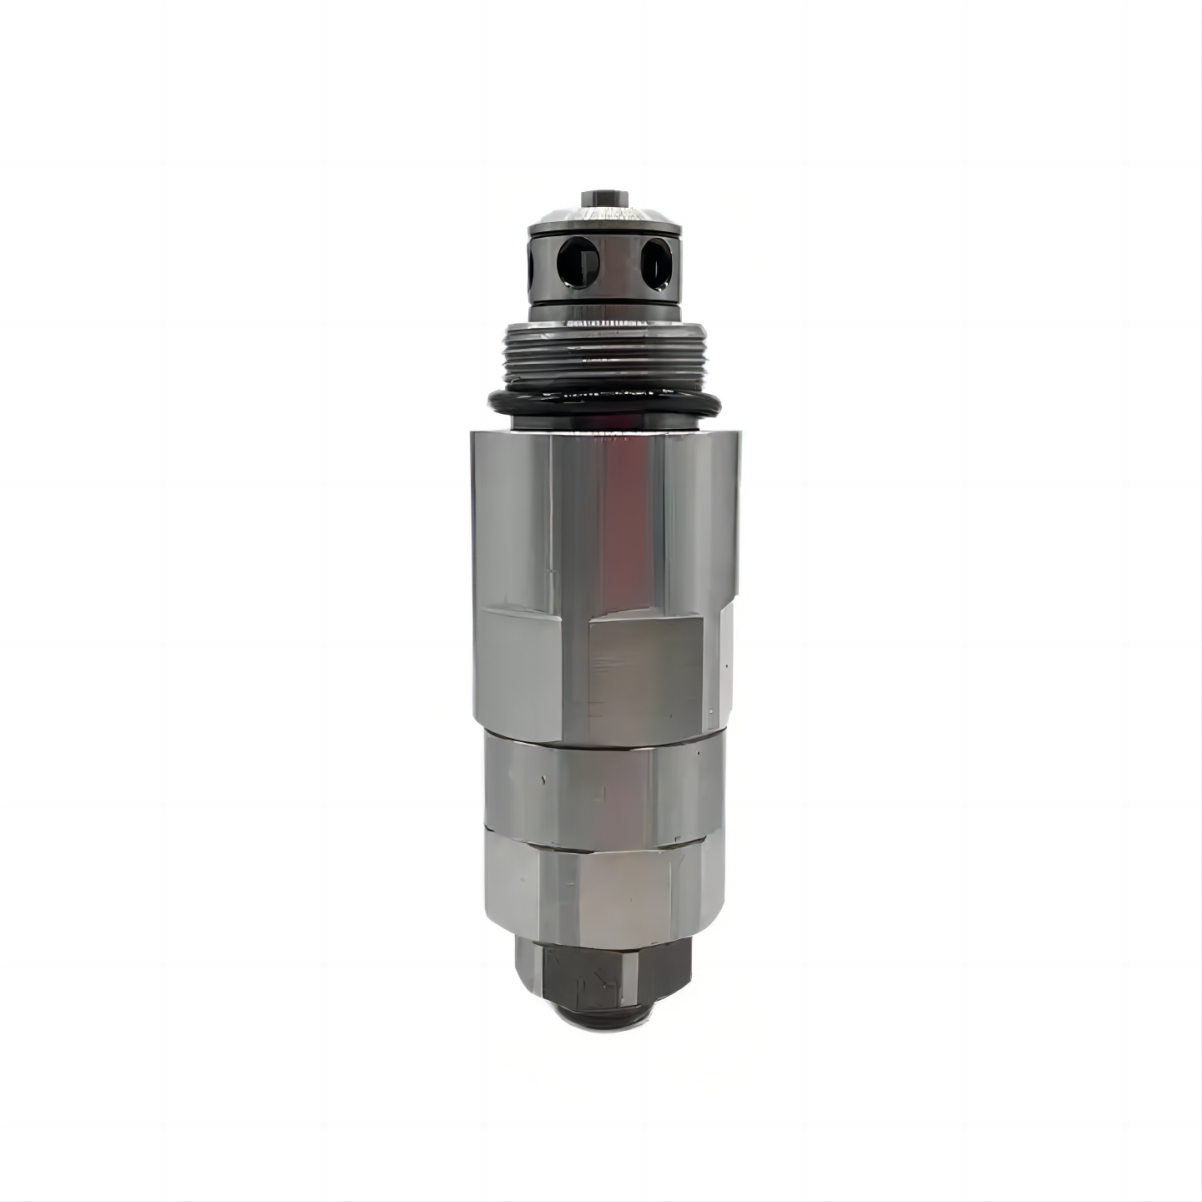 Excavator relief valve SK200-5 proportional solenoid valve YN22V00029F1